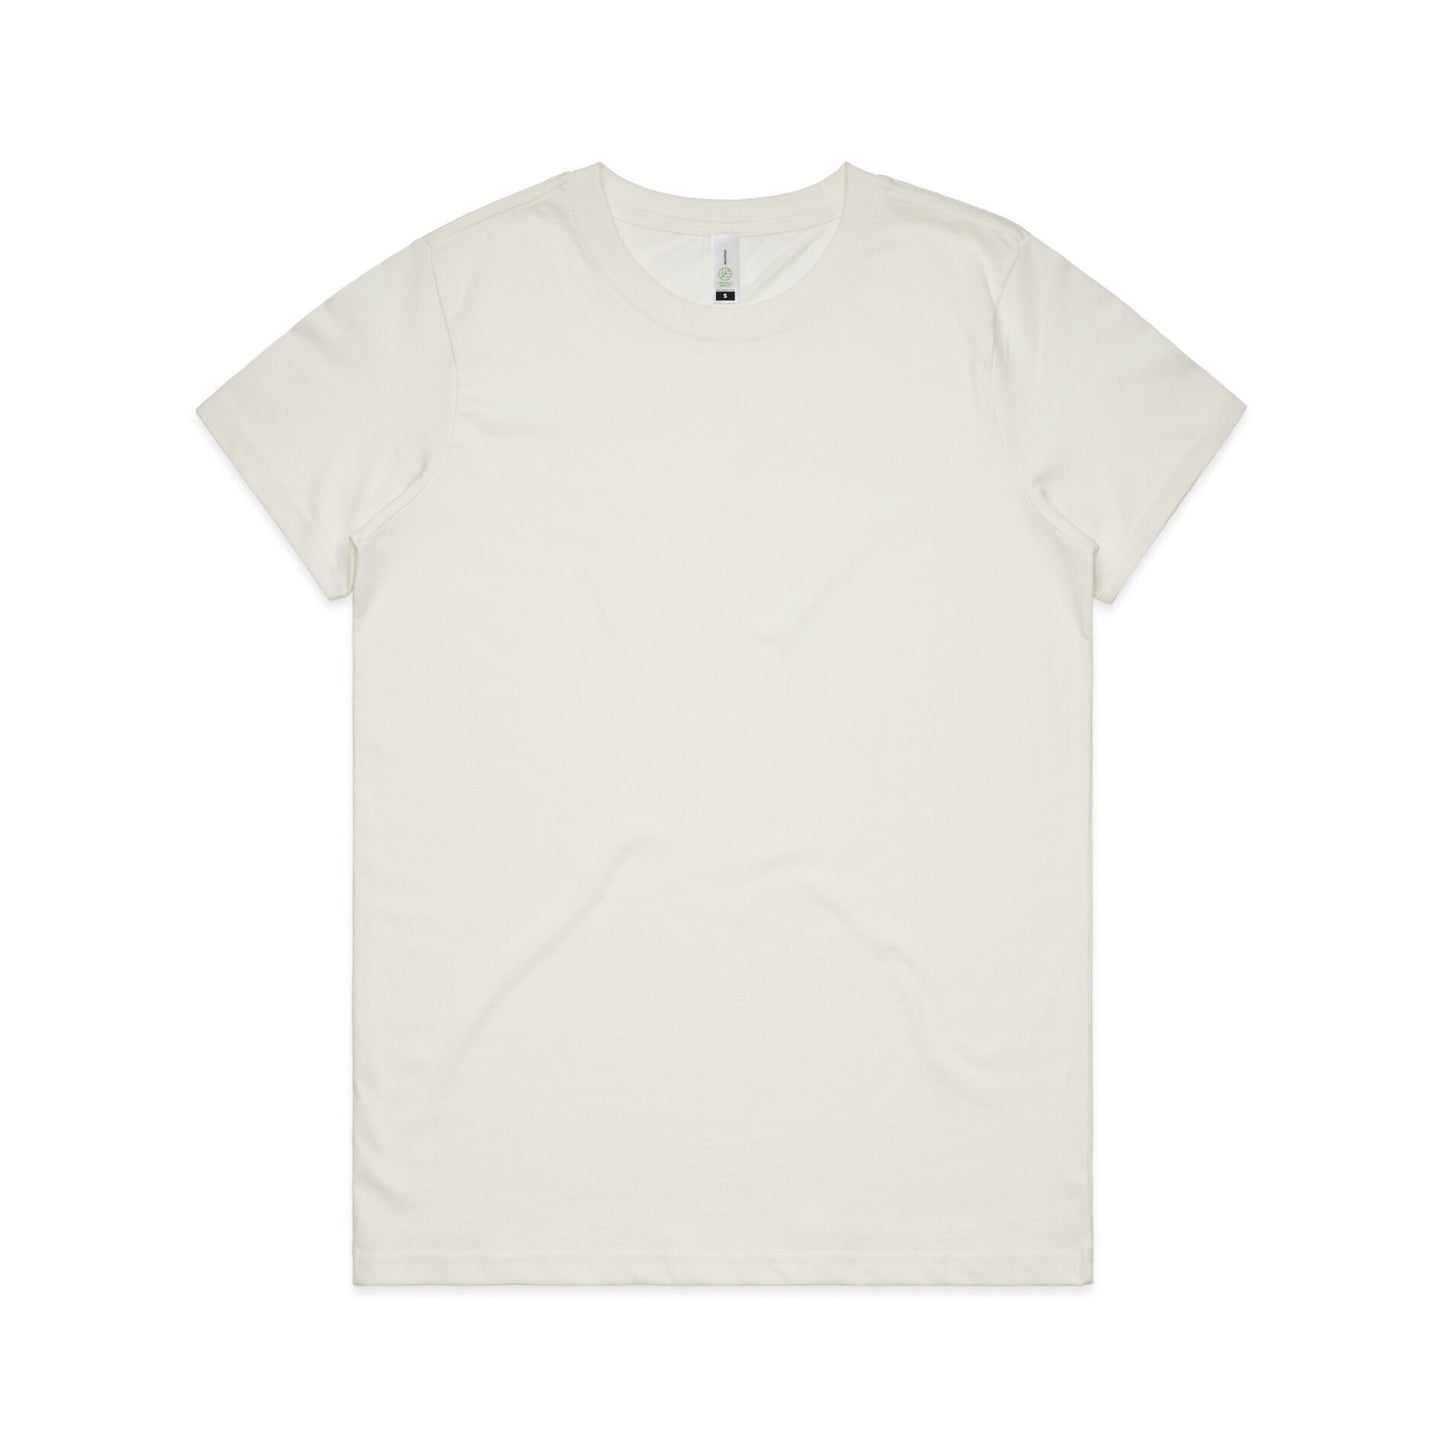 Make shapes SNP T-shirt (female)